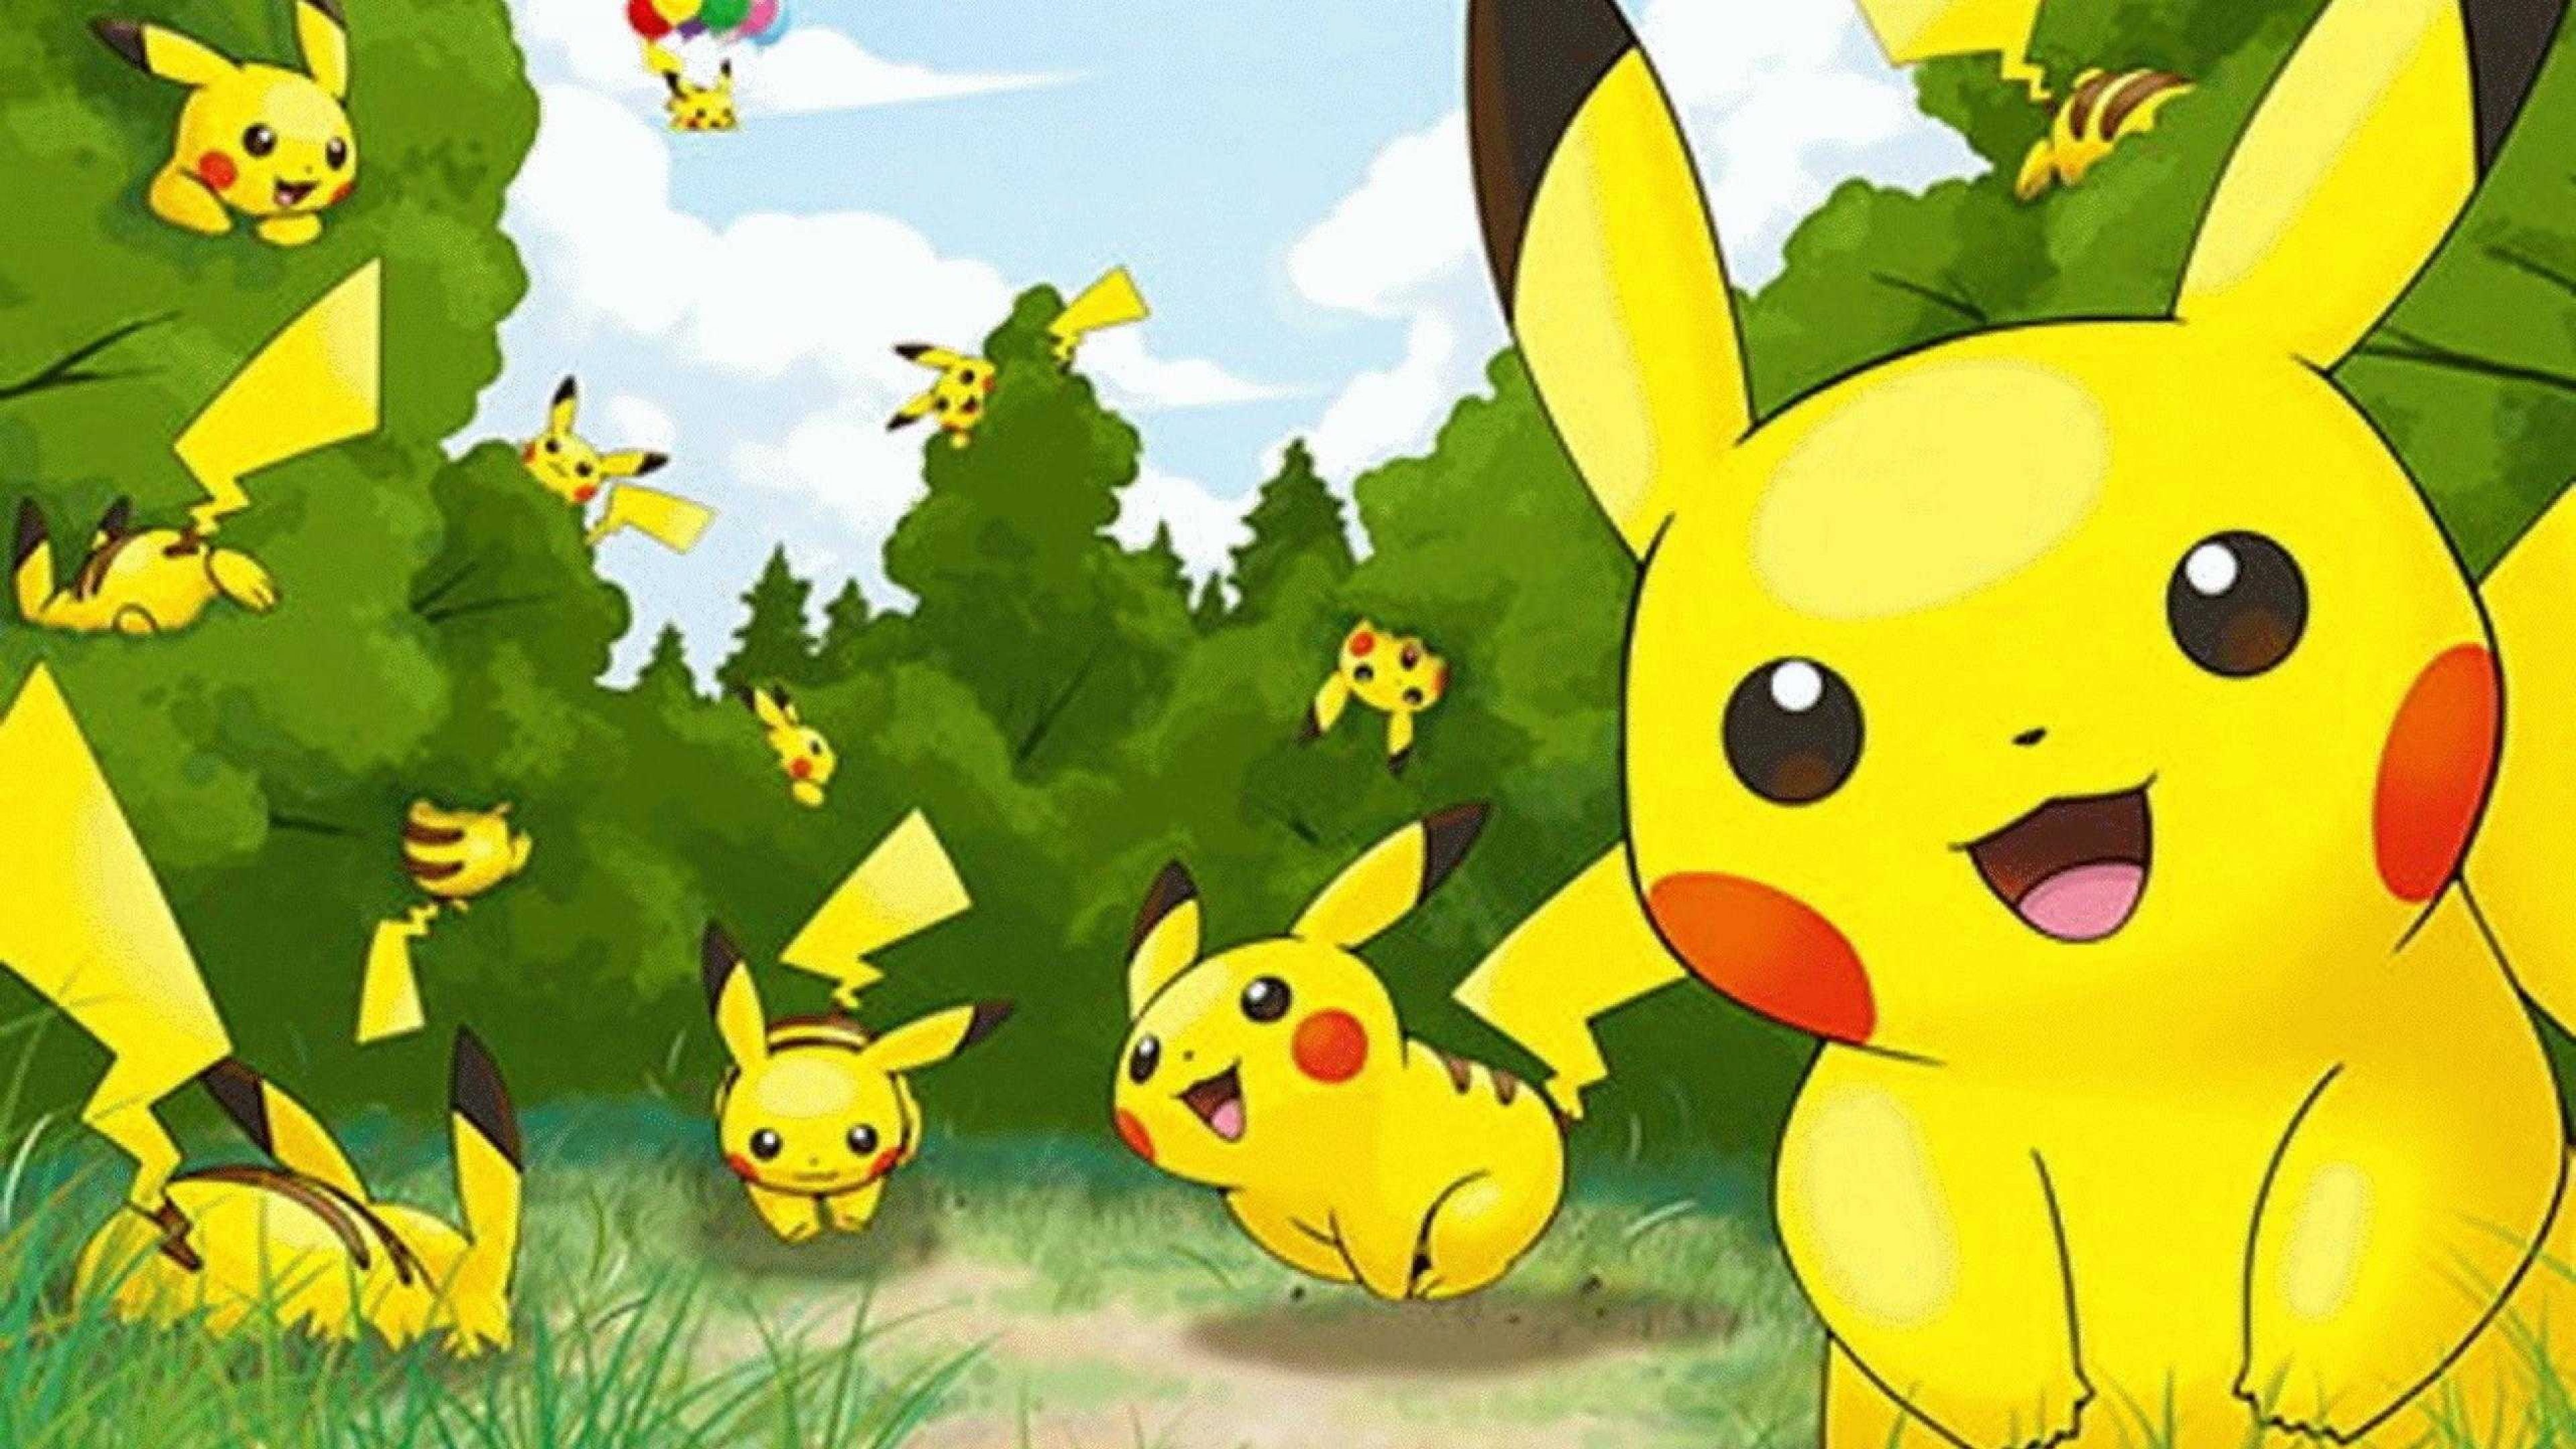 3840x2160 pokemon wallpaper hd pikachu